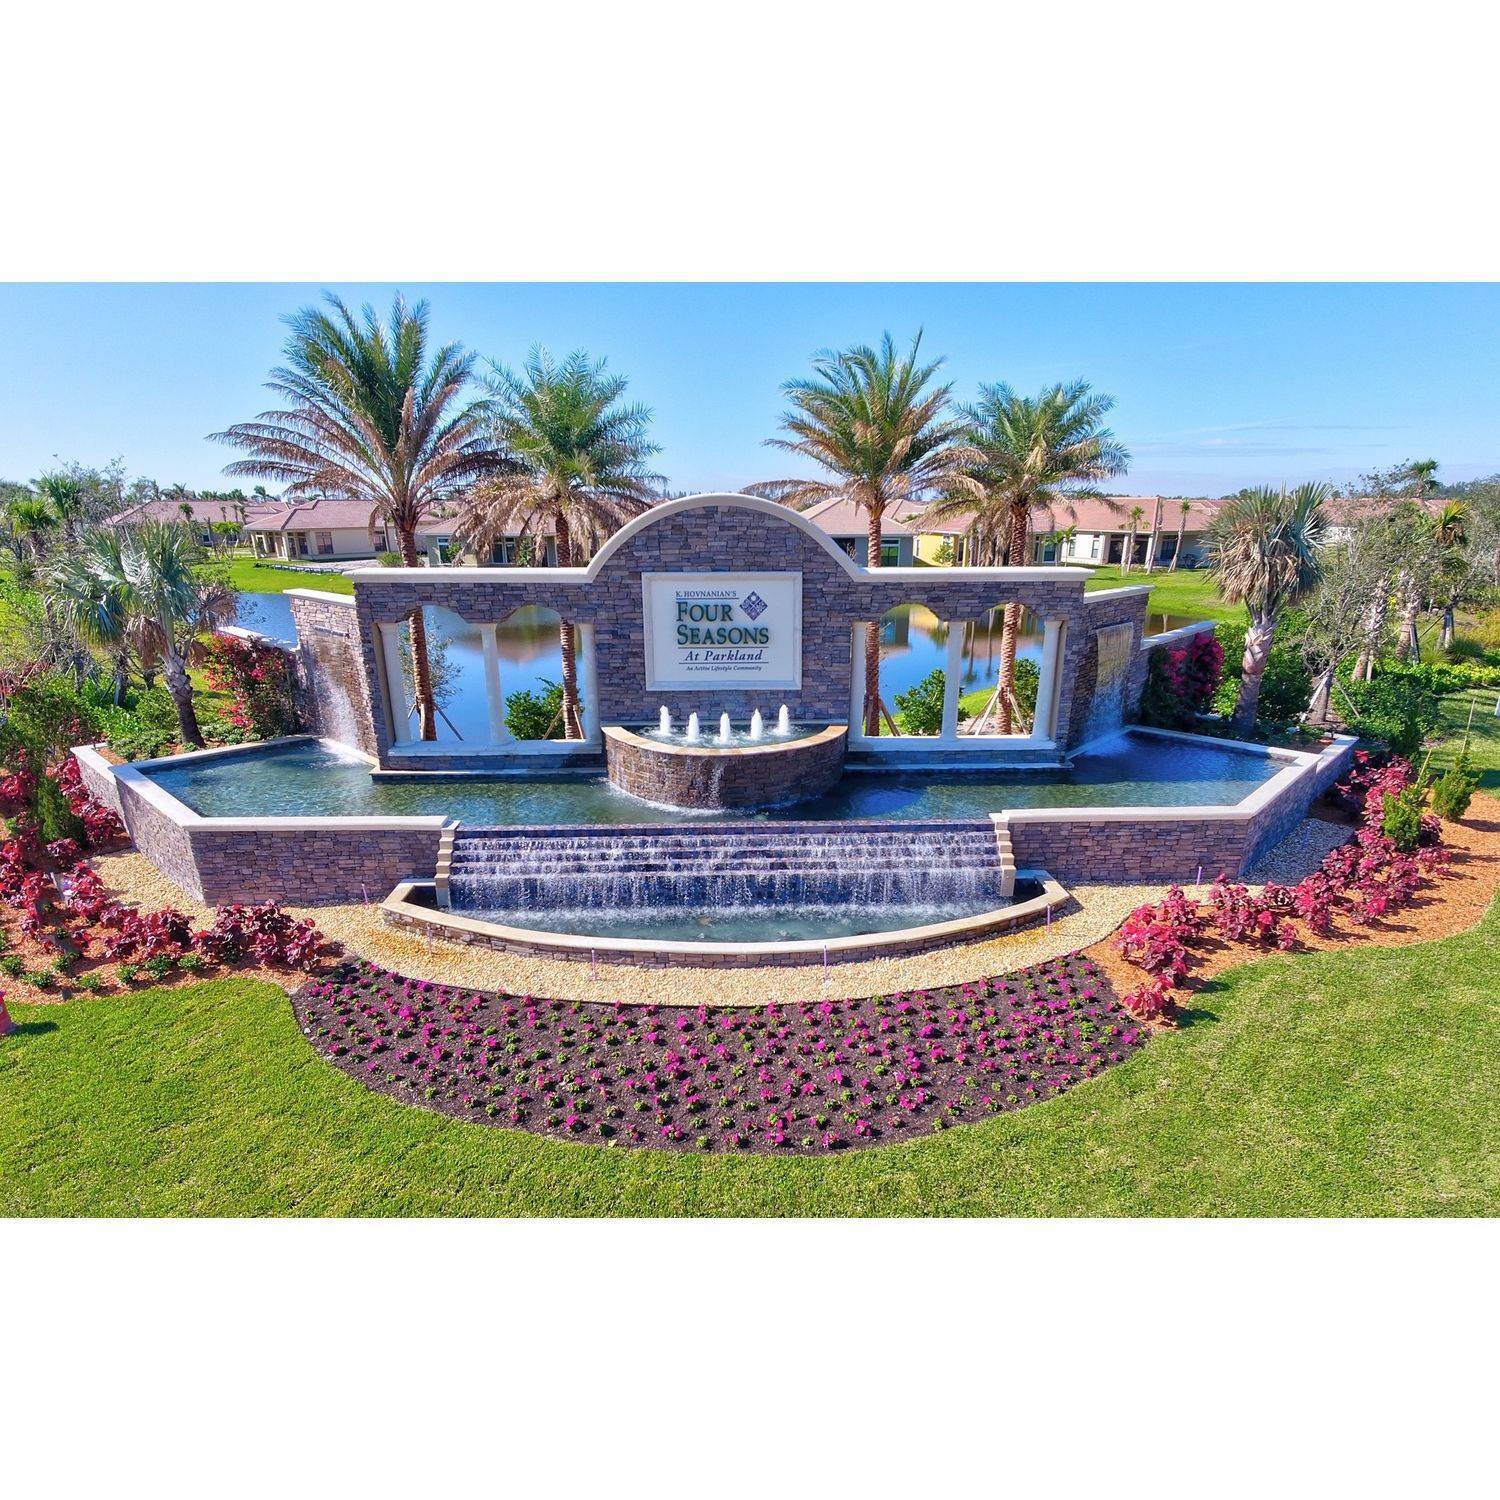 3. K. Hovnanian's® Four Seasons at Parkland xây dựng tại 9330 Noor Boulevard, Parkland, FL 33076